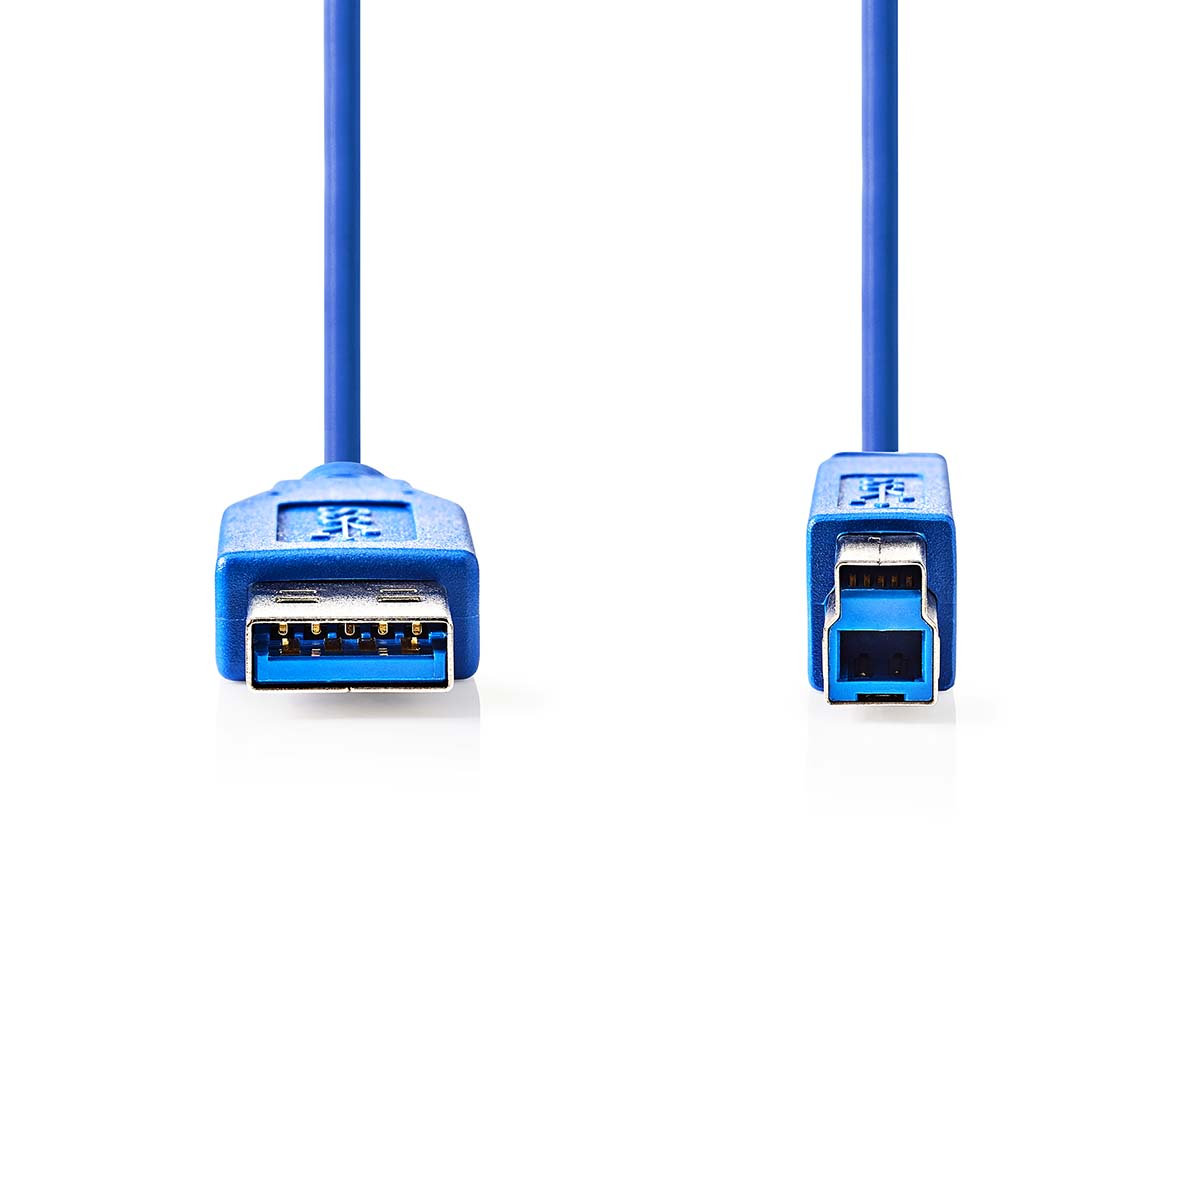 NEDIS CCGP61100BU20 USB-Kabel